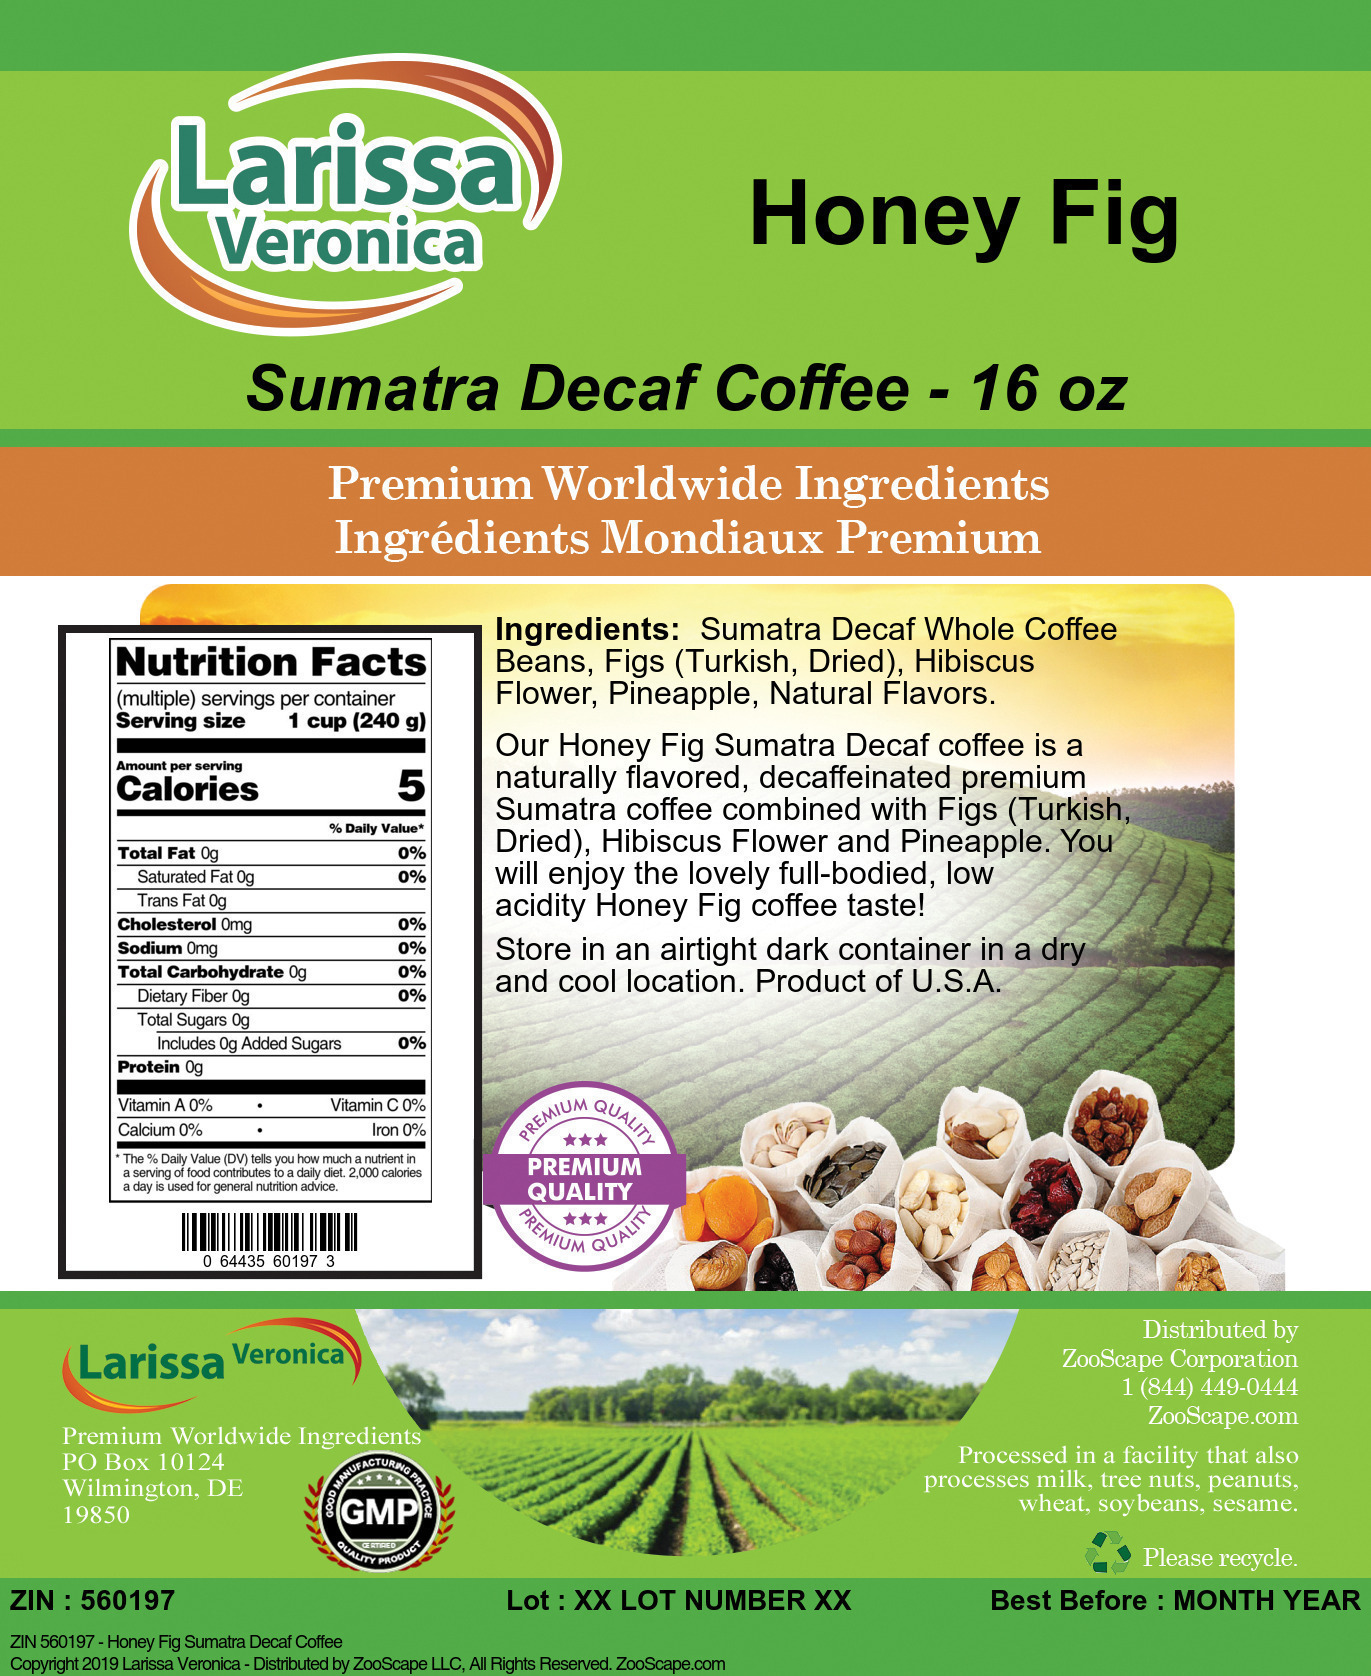 Honey Fig Sumatra Decaf Coffee - Label